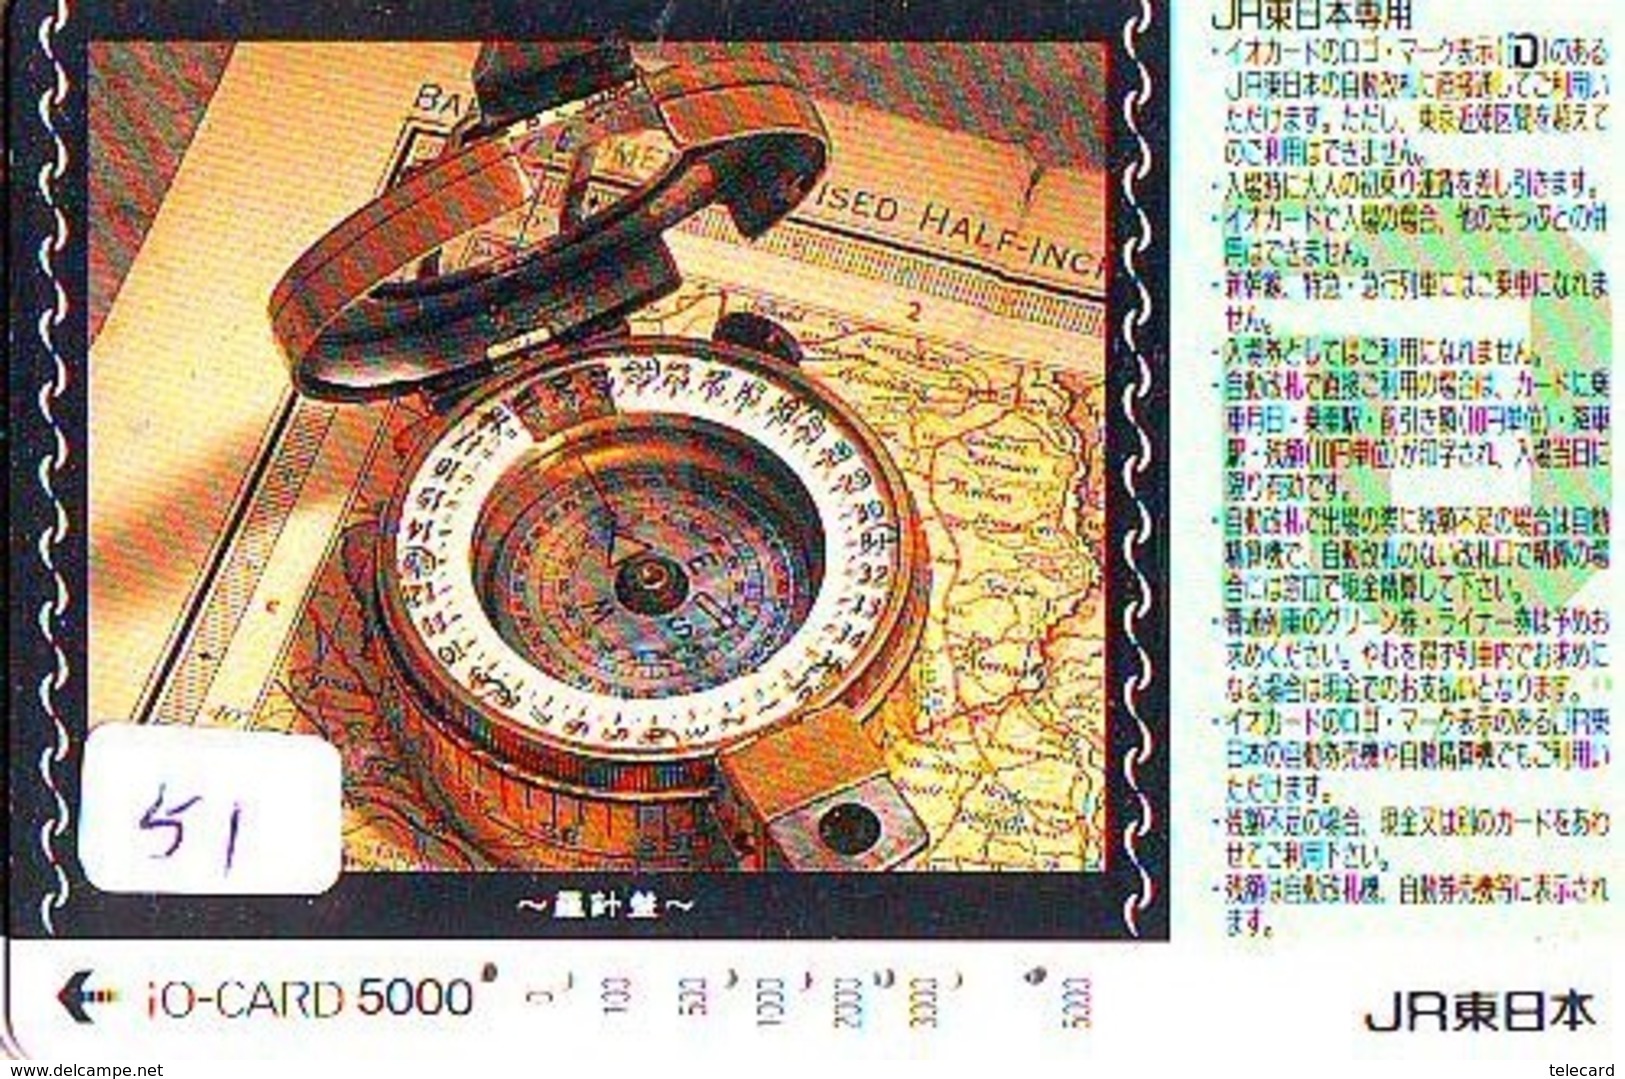 Compass Boussole Kompaß Kompas Sur Carte JAPAN (51) East West South North - Sterrenkunde